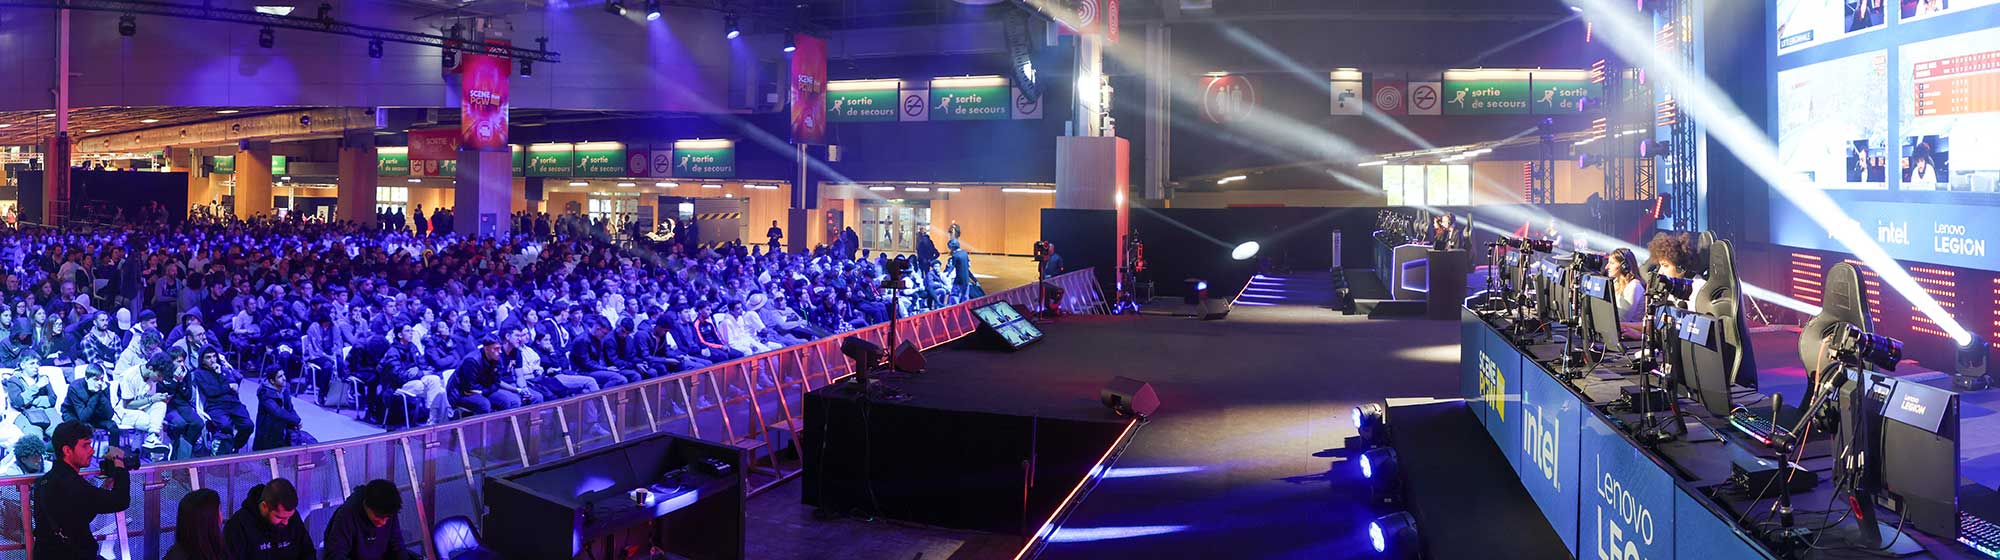 Une foule assise regarde des joueurs jouer à des jeux vidéo sur une scène dotée d'un écran géant